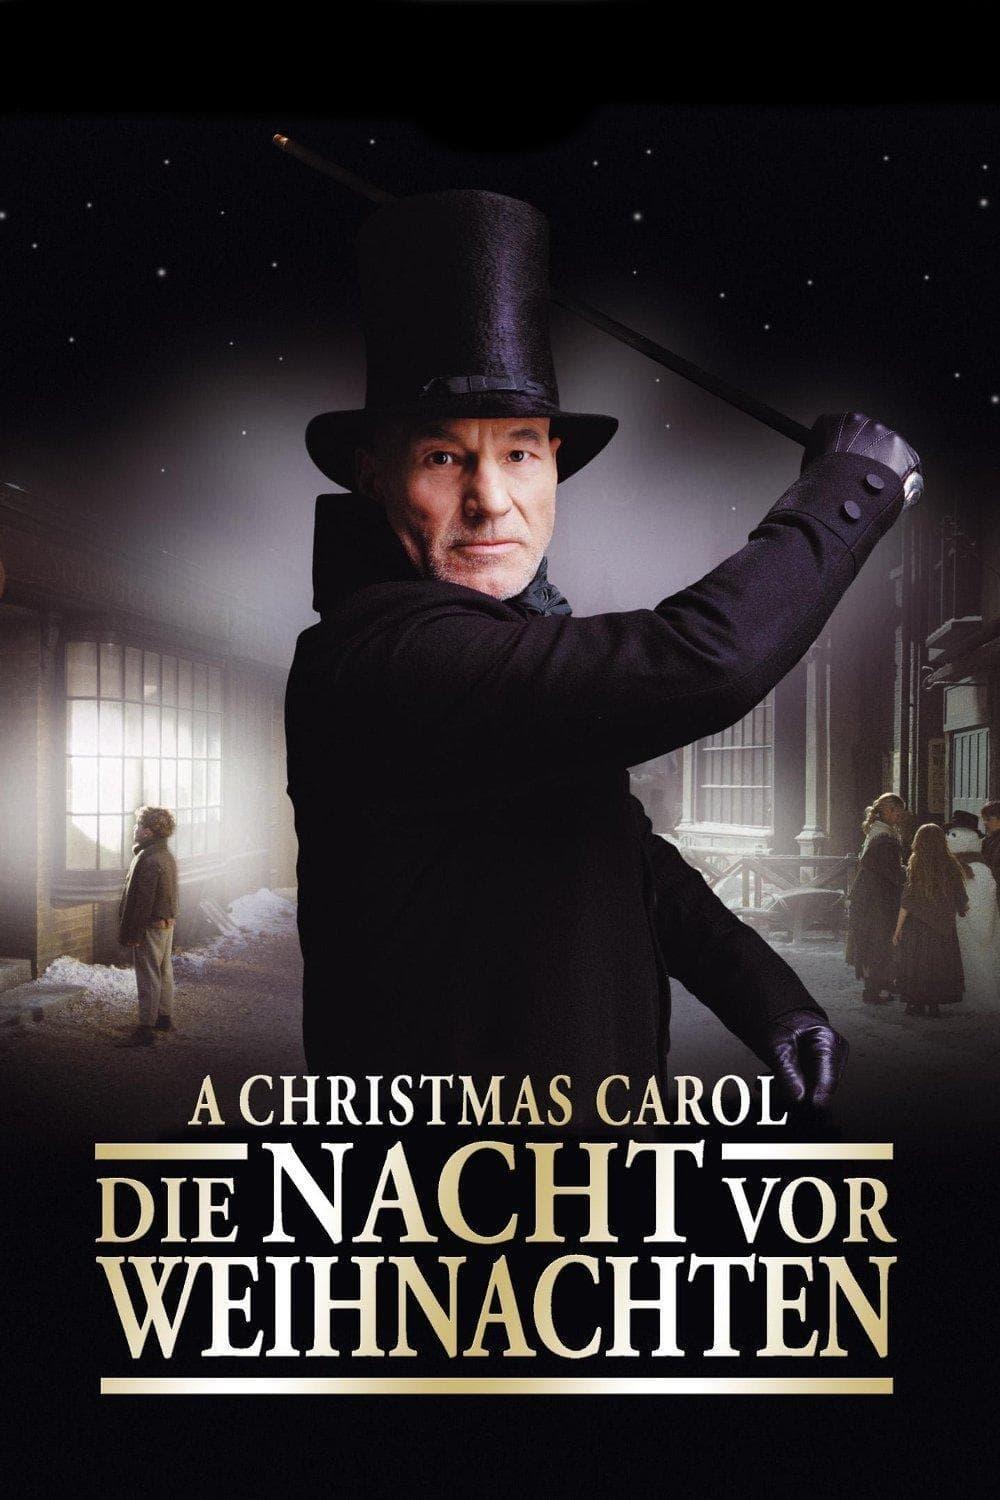 A Christmas Carol - Die Nacht vor Weihnachten poster